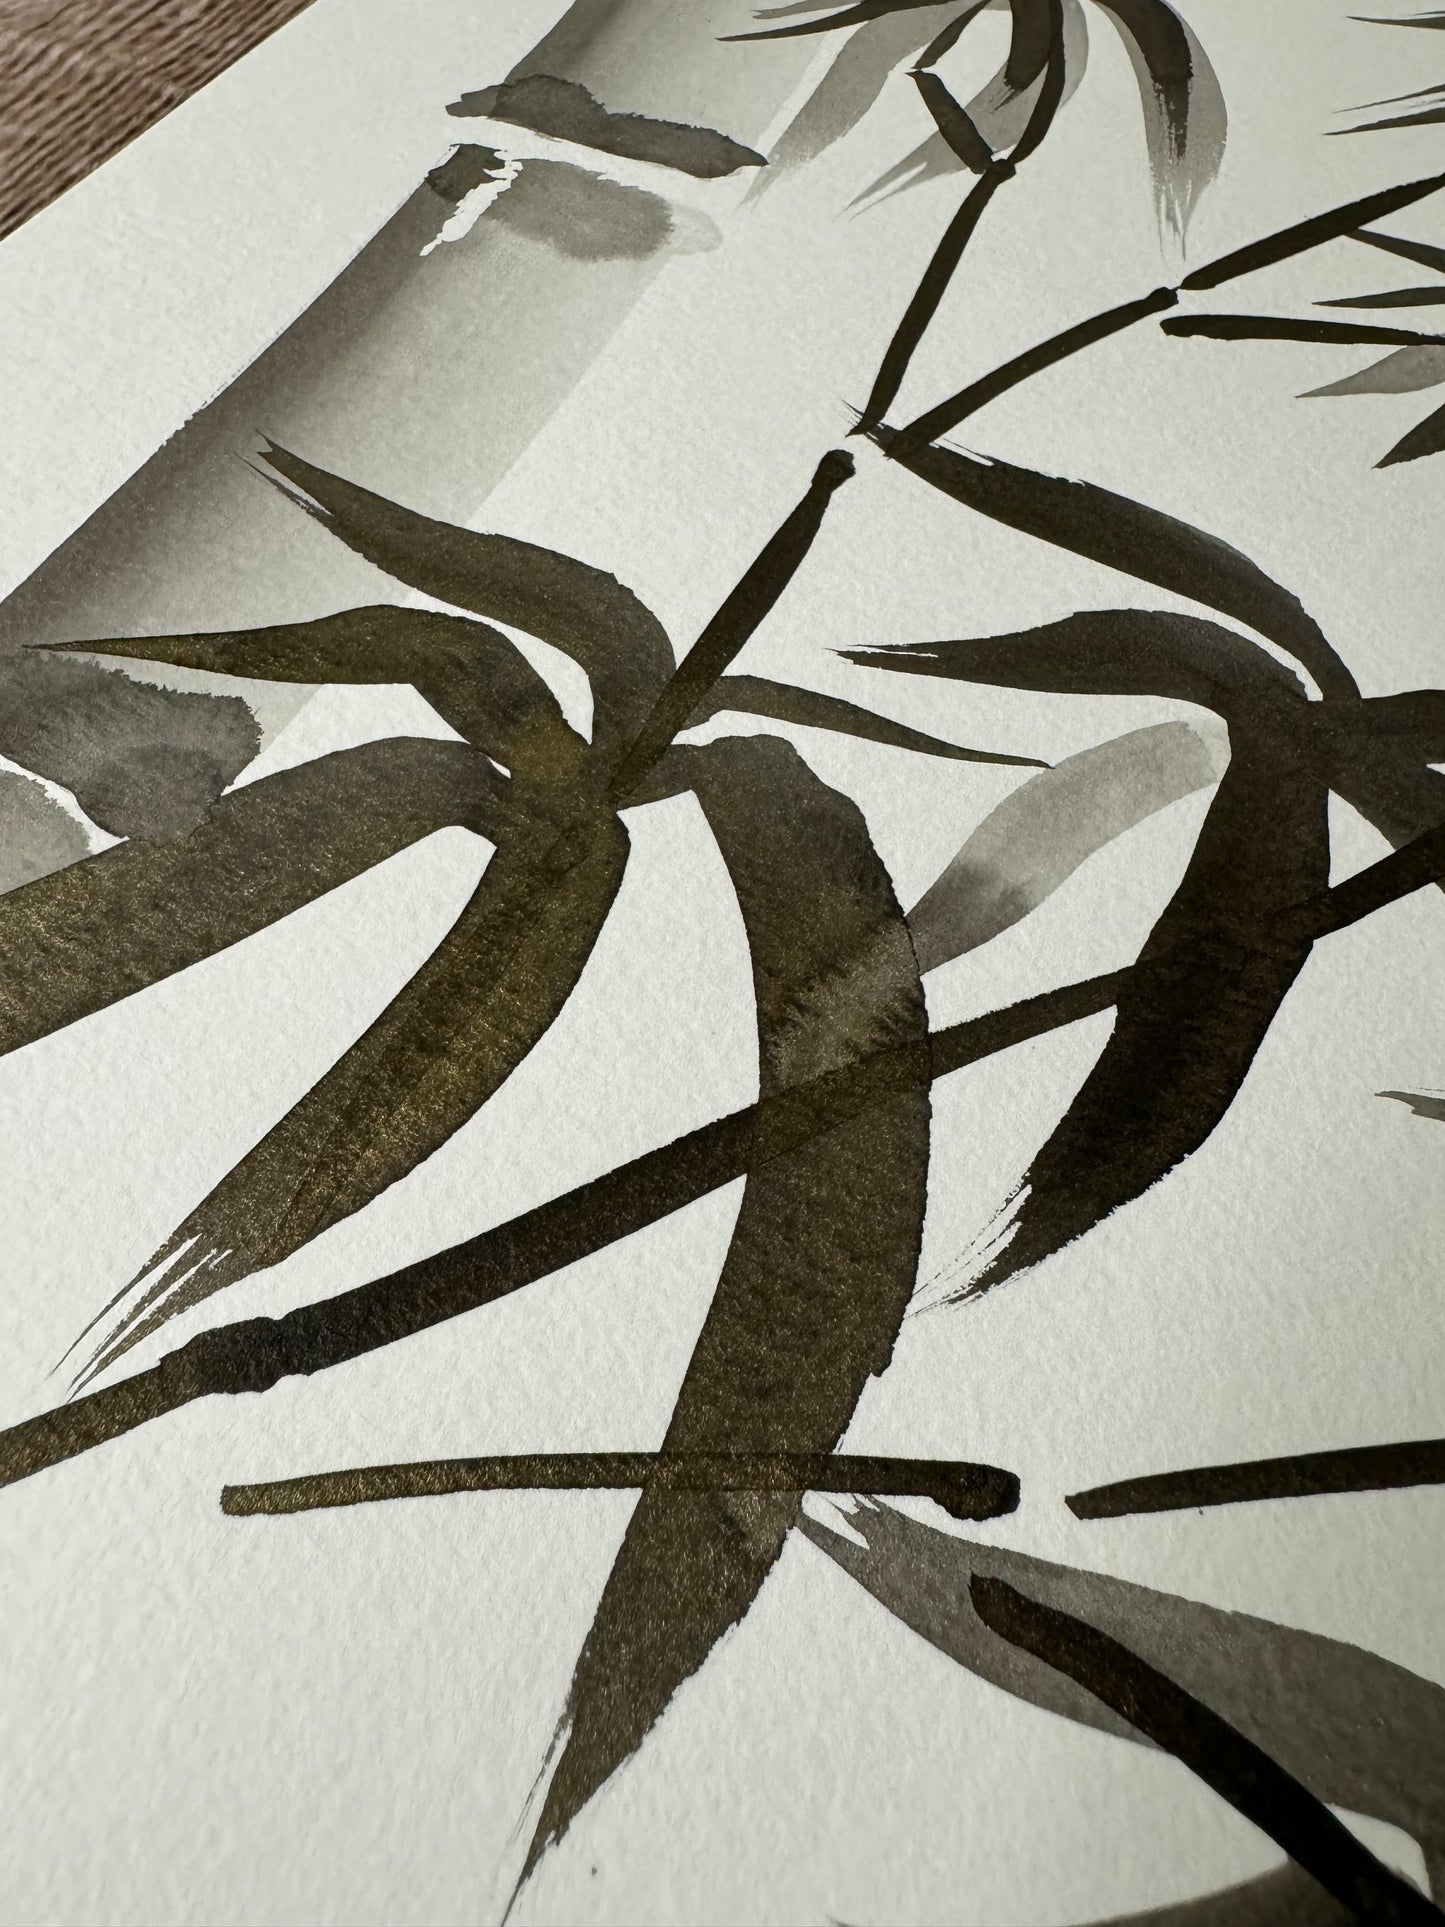 Bamboo: Sumi Ink Original w/ Art of Mizuki Stamp